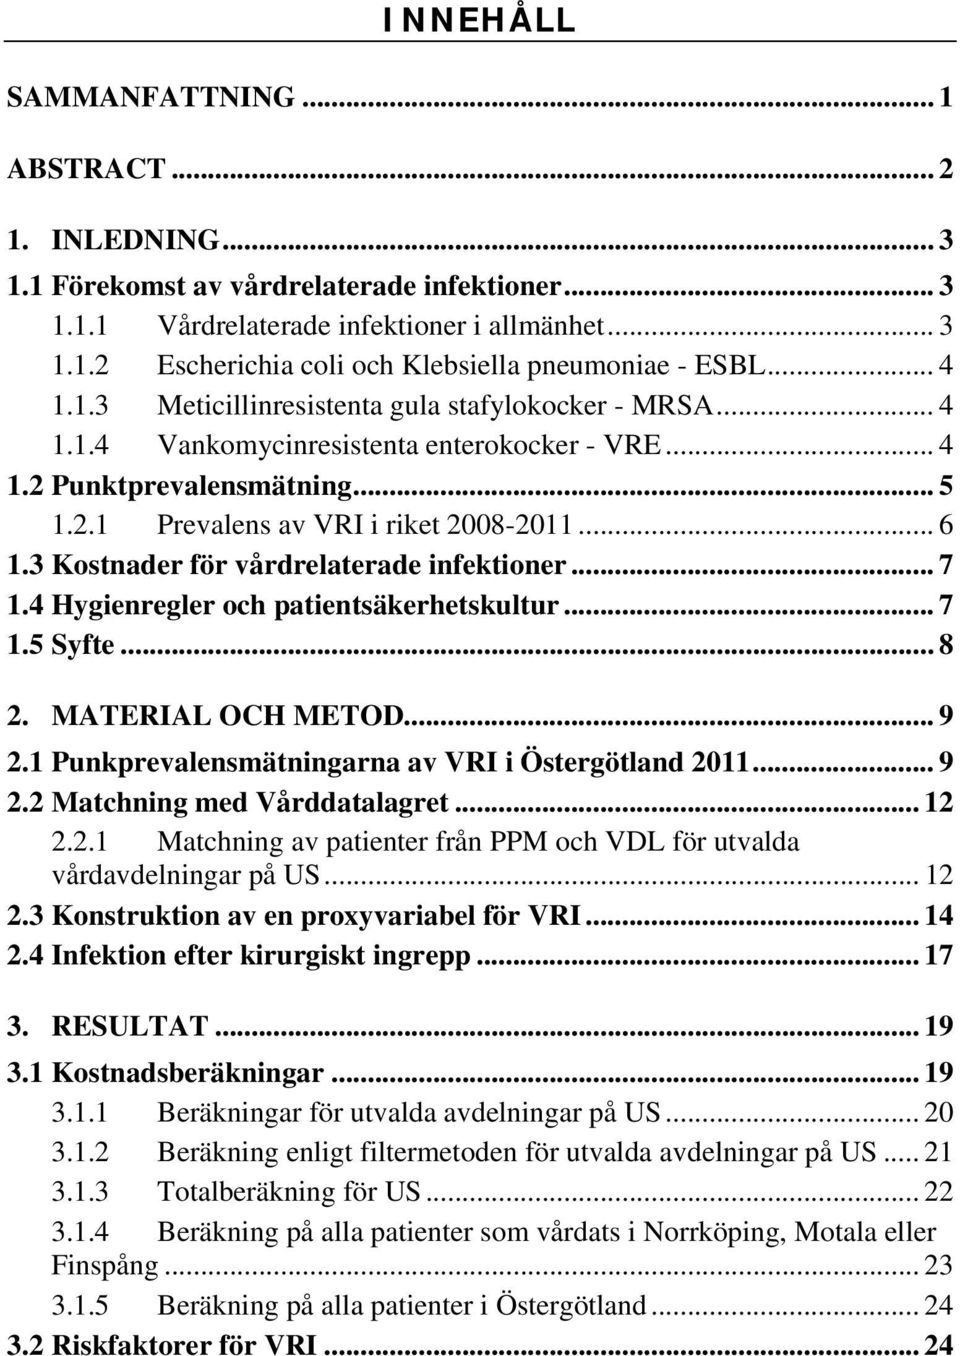 3 Kostnader för vårdrelaterade infektioner... 7 1.4 Hygienregler och patientsäkerhetskultur... 7 1.5 Syfte... 8 2. MATERIAL OCH METOD... 9 2.1 Punkprevalensmätningarna av VRI i Östergötland 2011... 9 2.2 Matchning med Vårddatalagret.